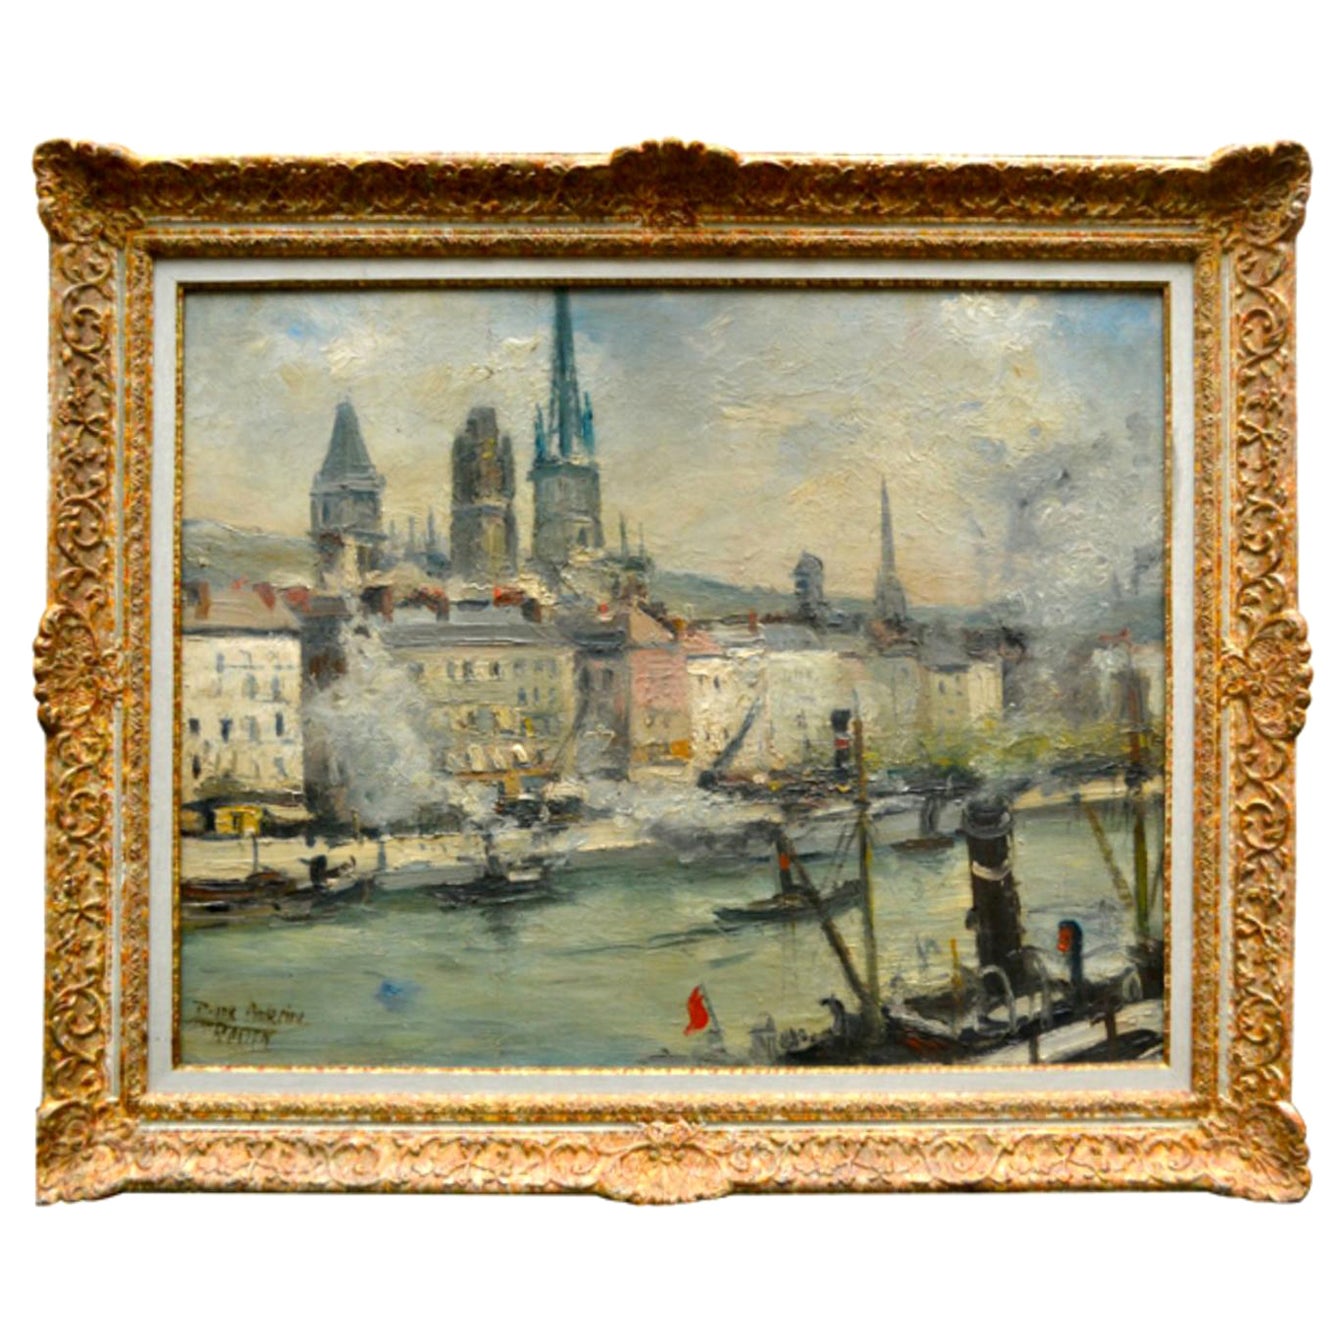 Une huile sur toile impressionniste montrant l'activité quotidienne de l'industrie et de la marine marchande sur la Seine à la ville de Rouen, en France, à l'aube du déclenchement de la Seconde Guerre mondiale en 1939. La toile est signée Roger